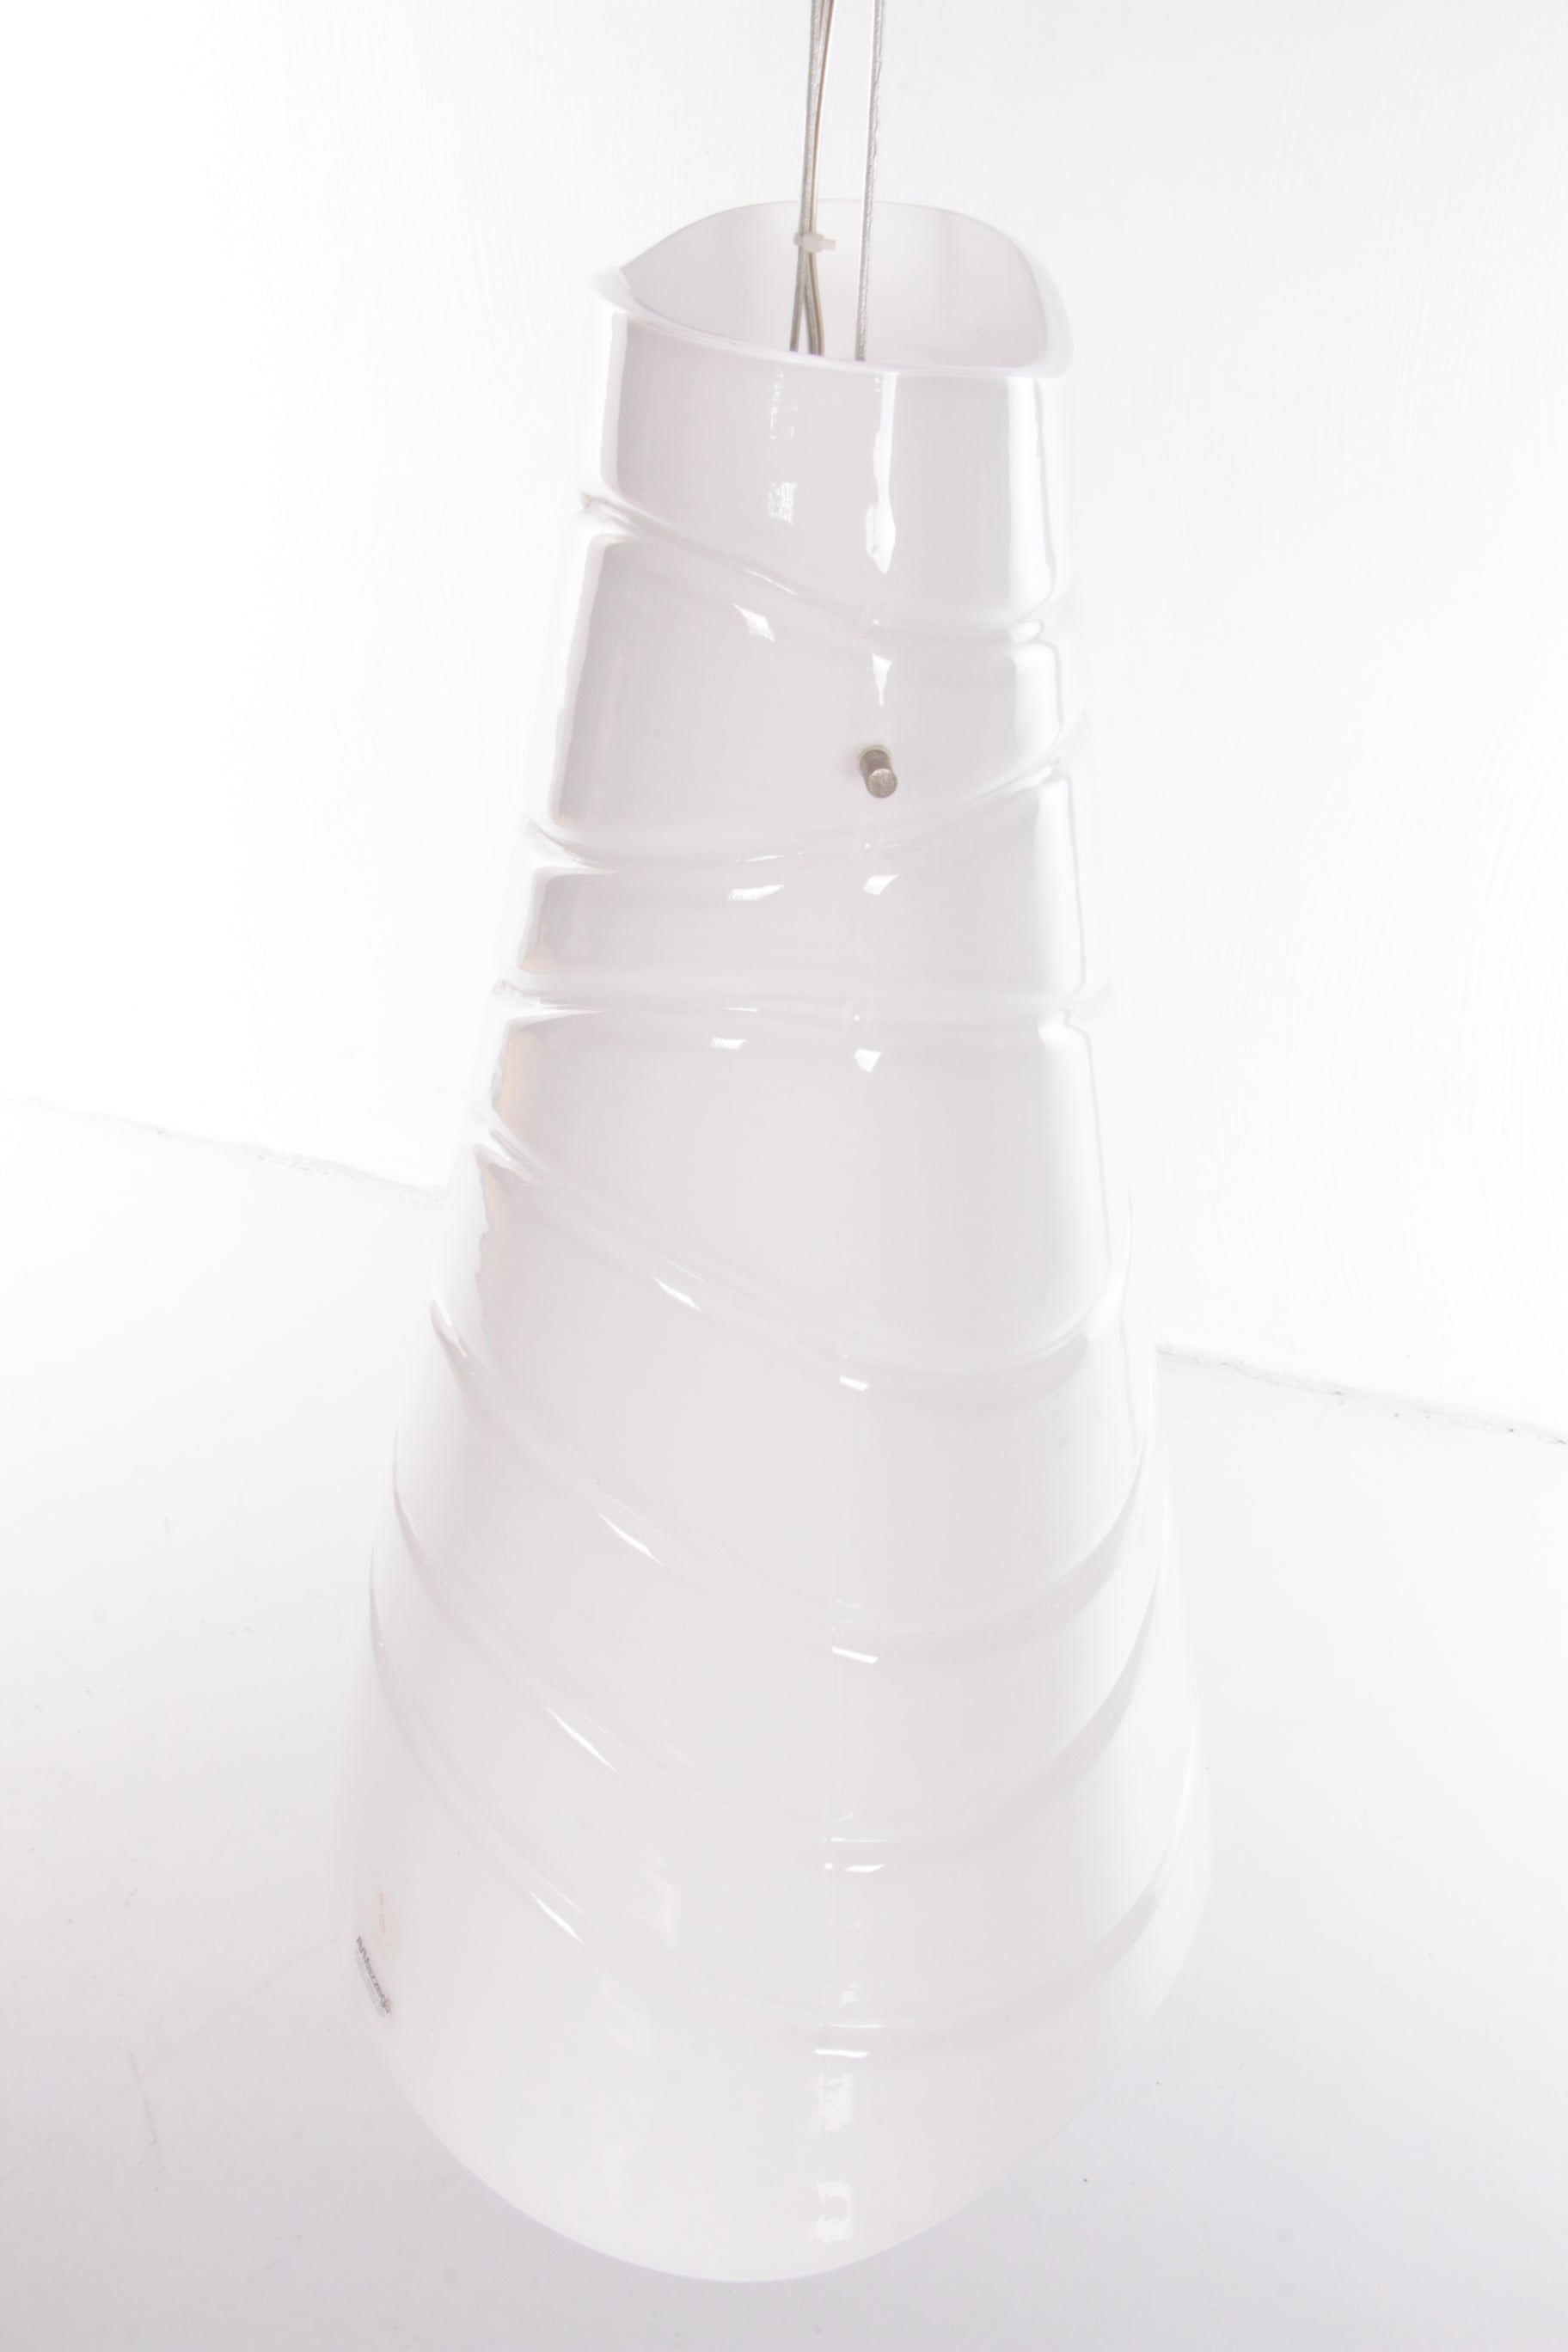 Italiaanse Hanglamp Murano glas gemaakt door AvMazzega,1990 Italie